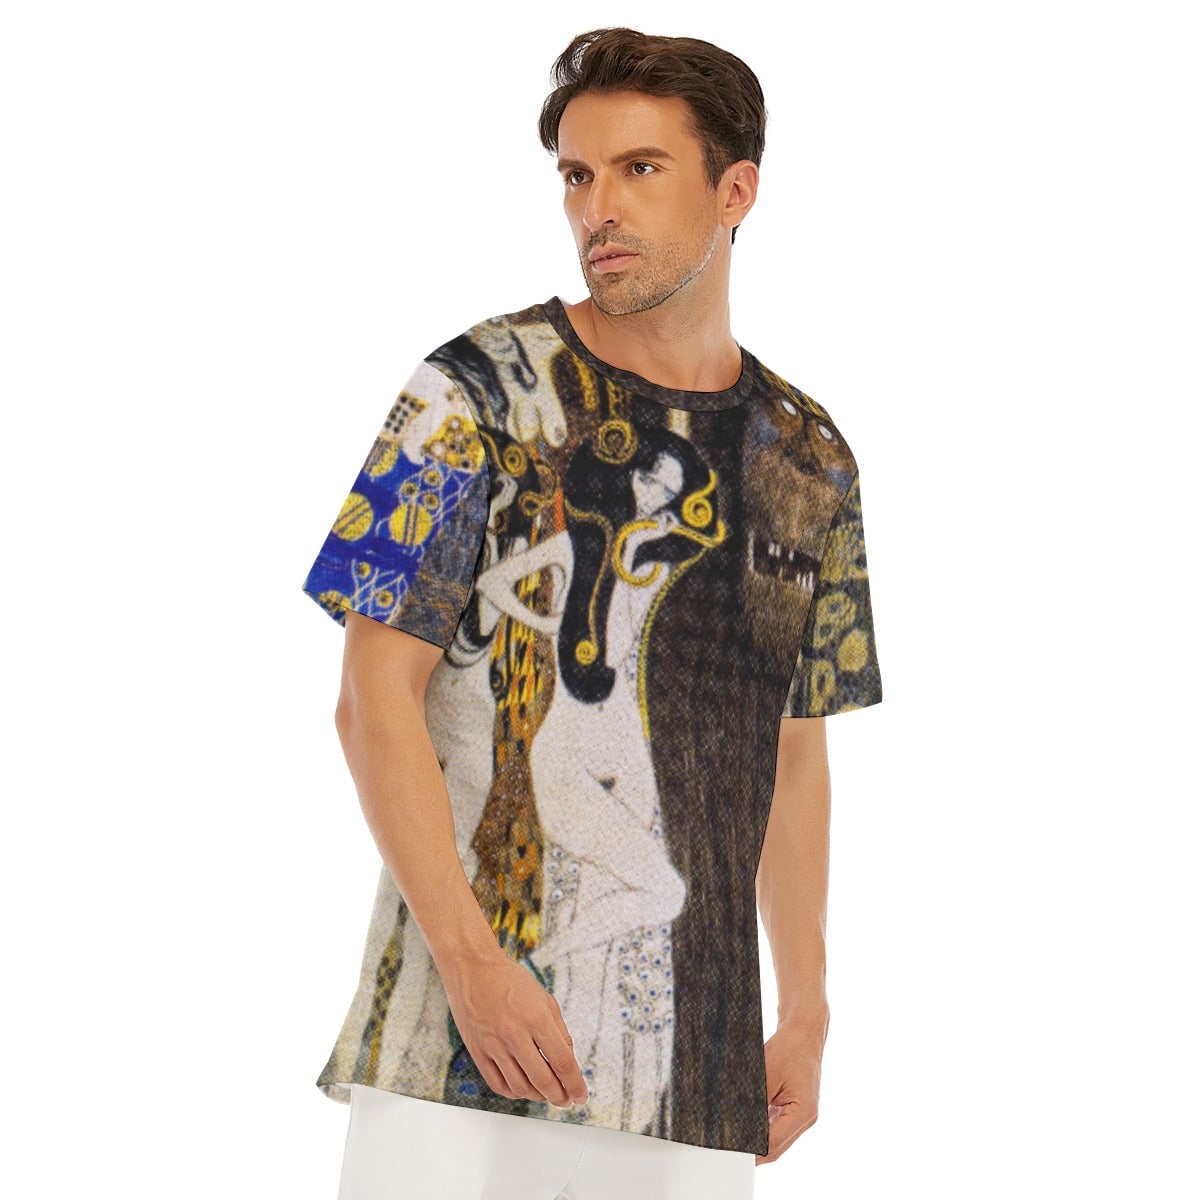 The Hostile Powers Gustav Klimt T-Shirt